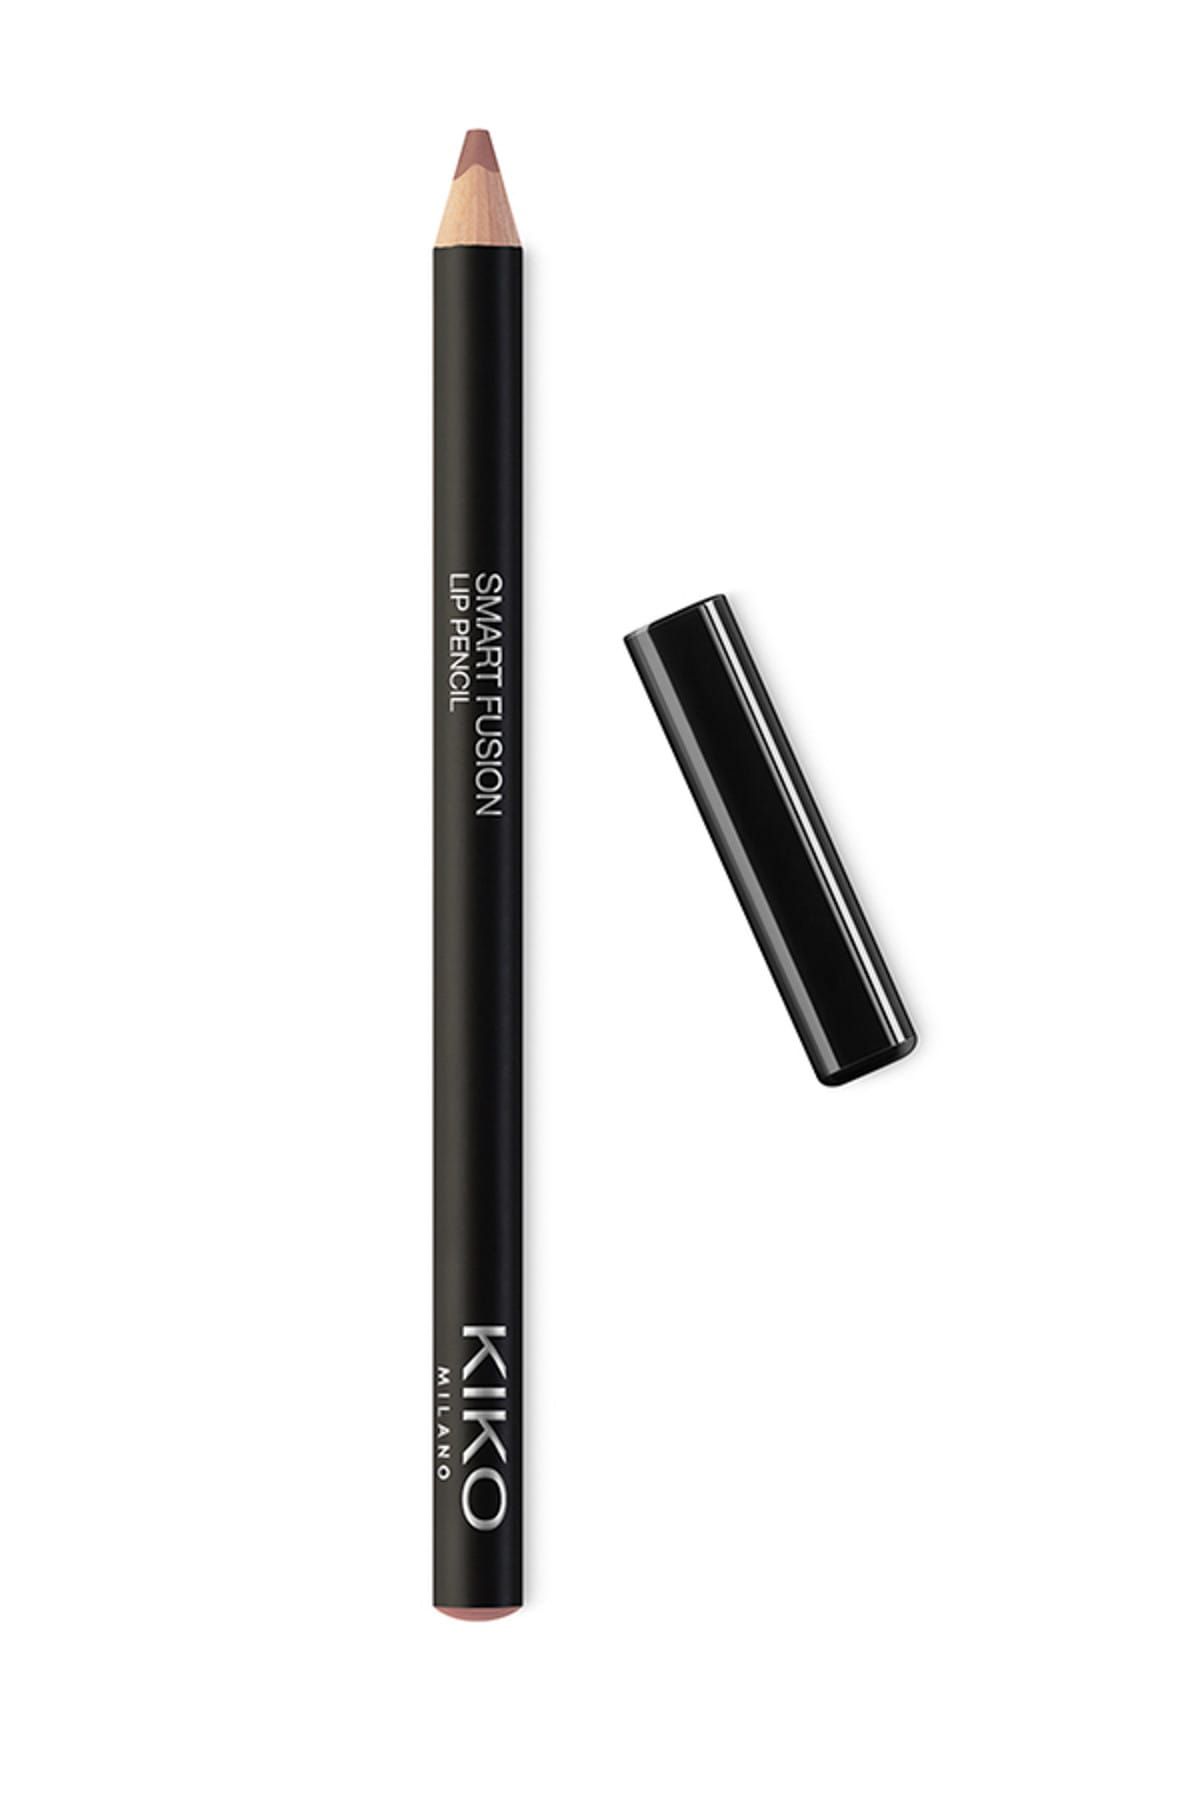 KIKO مداد لب Smart Fusion بافت نرم و روان شماره ۵۳۶ رنگ قهوه ای سرد